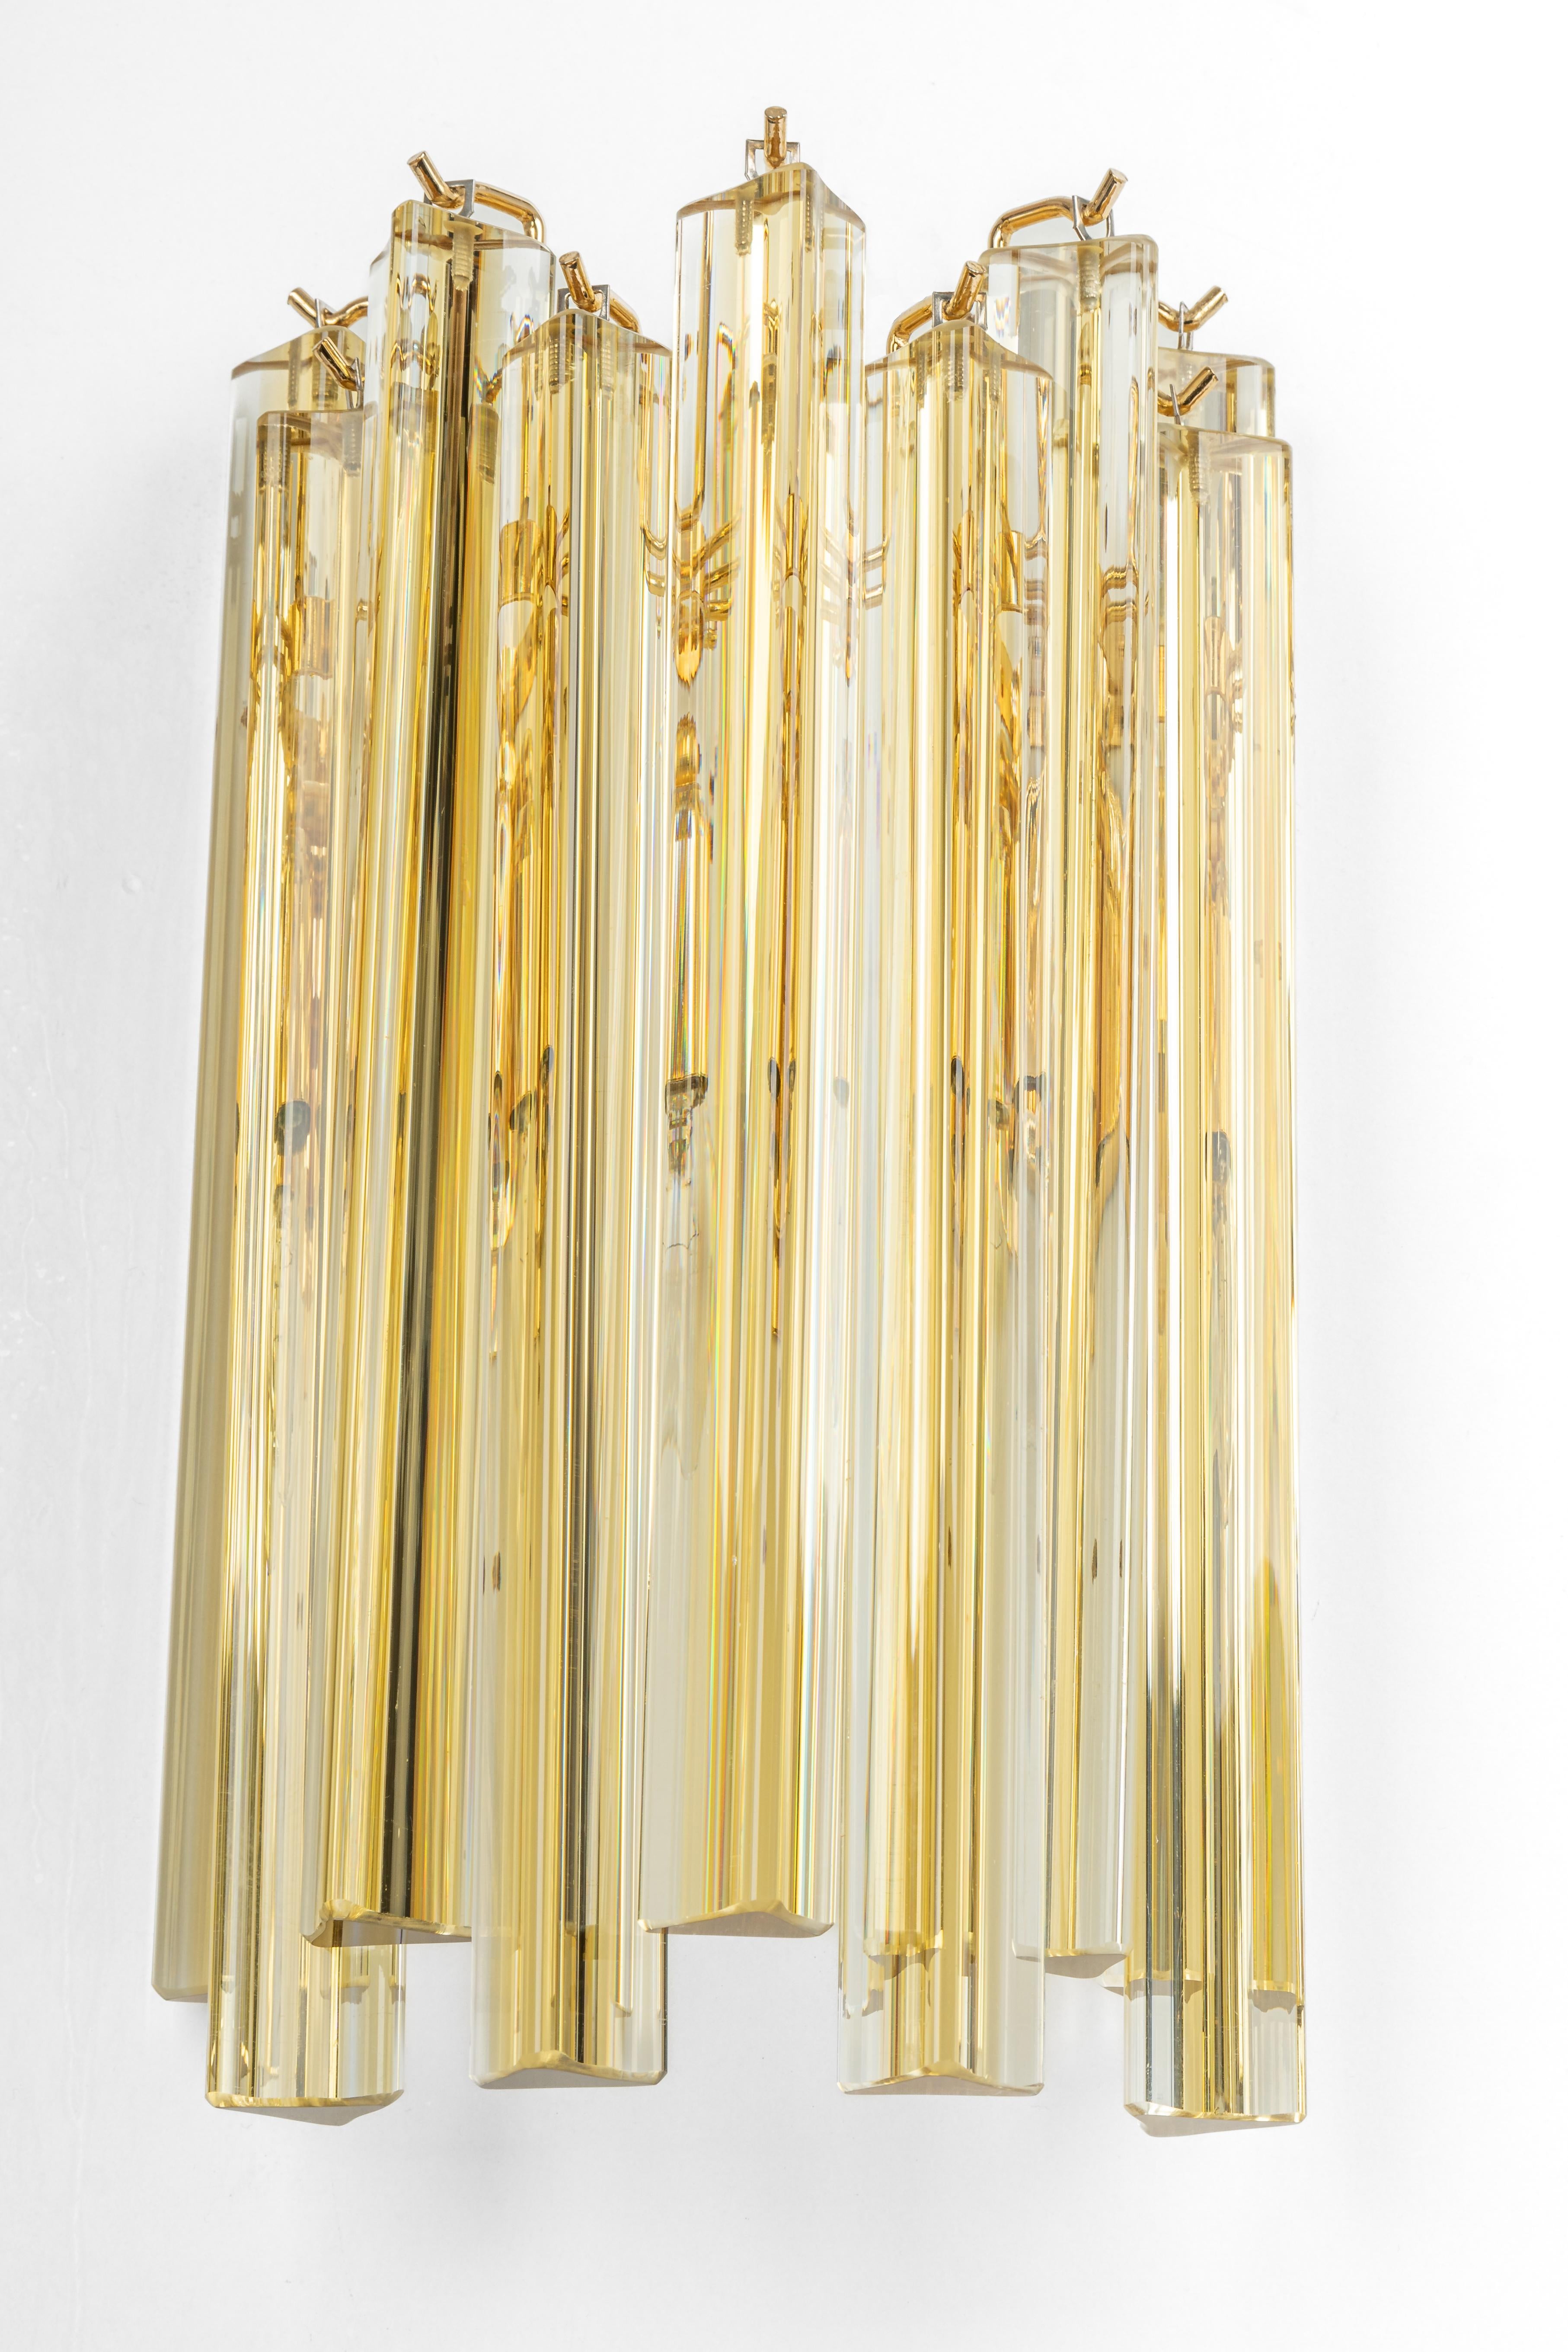 Satz von 2 Wandleuchten aus Muranoglas, entworfen von Venini für Kalmar, 1970er Jahre
Messingrahmen sammelt 9 strukturierte Gläser, schön brechen das Licht sehr schwere Qualität.

Hochwertig und in sehr gutem Zustand. Gereinigt, gut verkabelt und